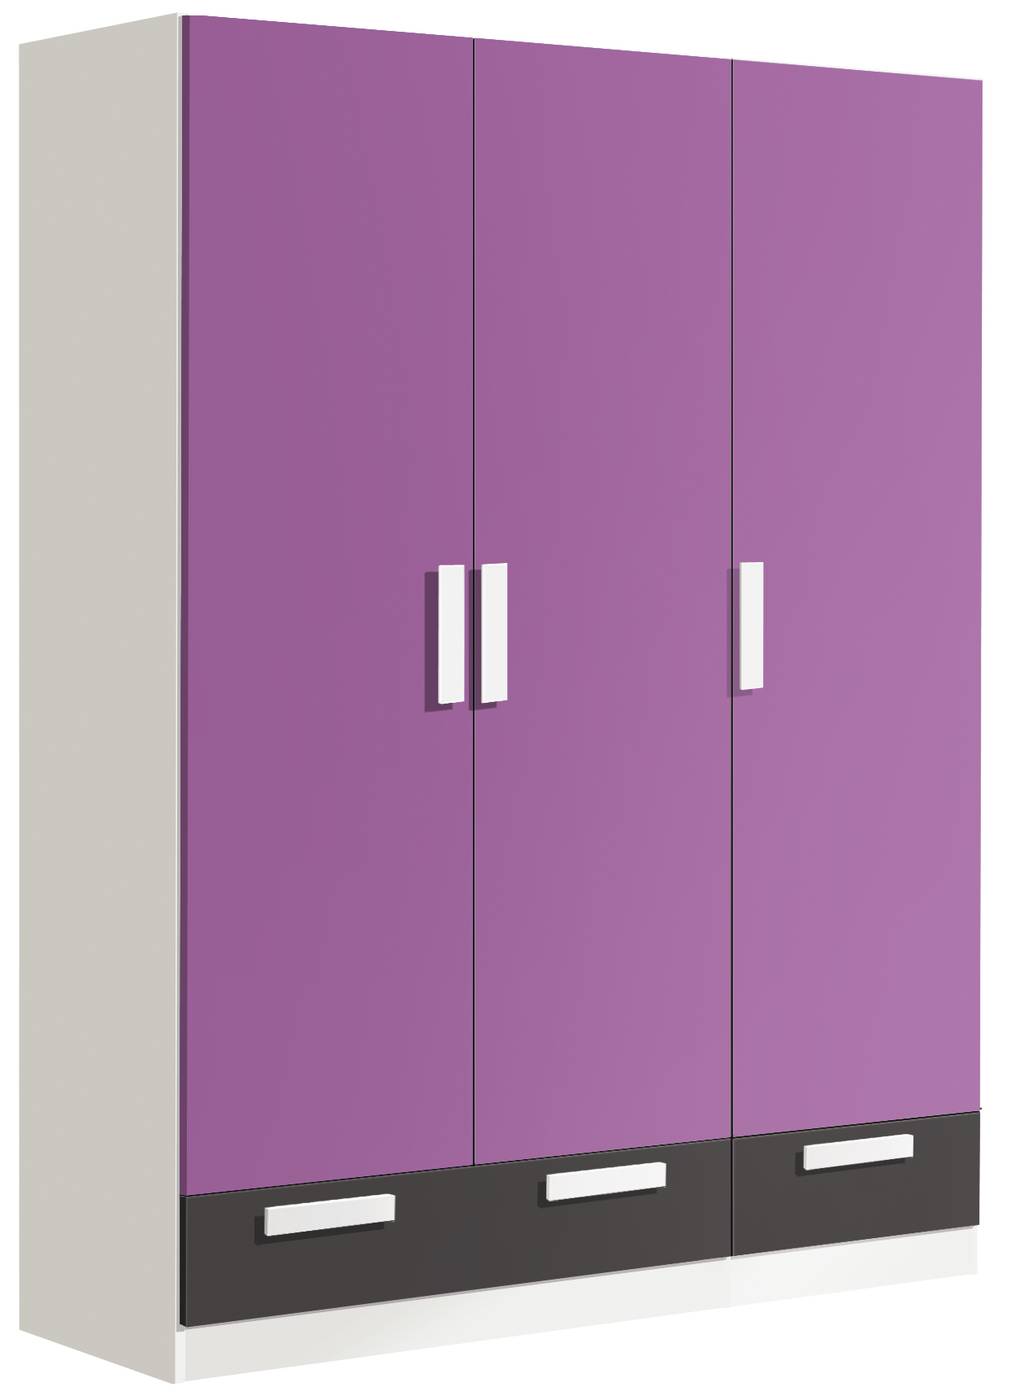 Armario ropero juvenil de color blanco o roble cambrian, con tres puertas y dos cajones, varios colores disponibles a elegir